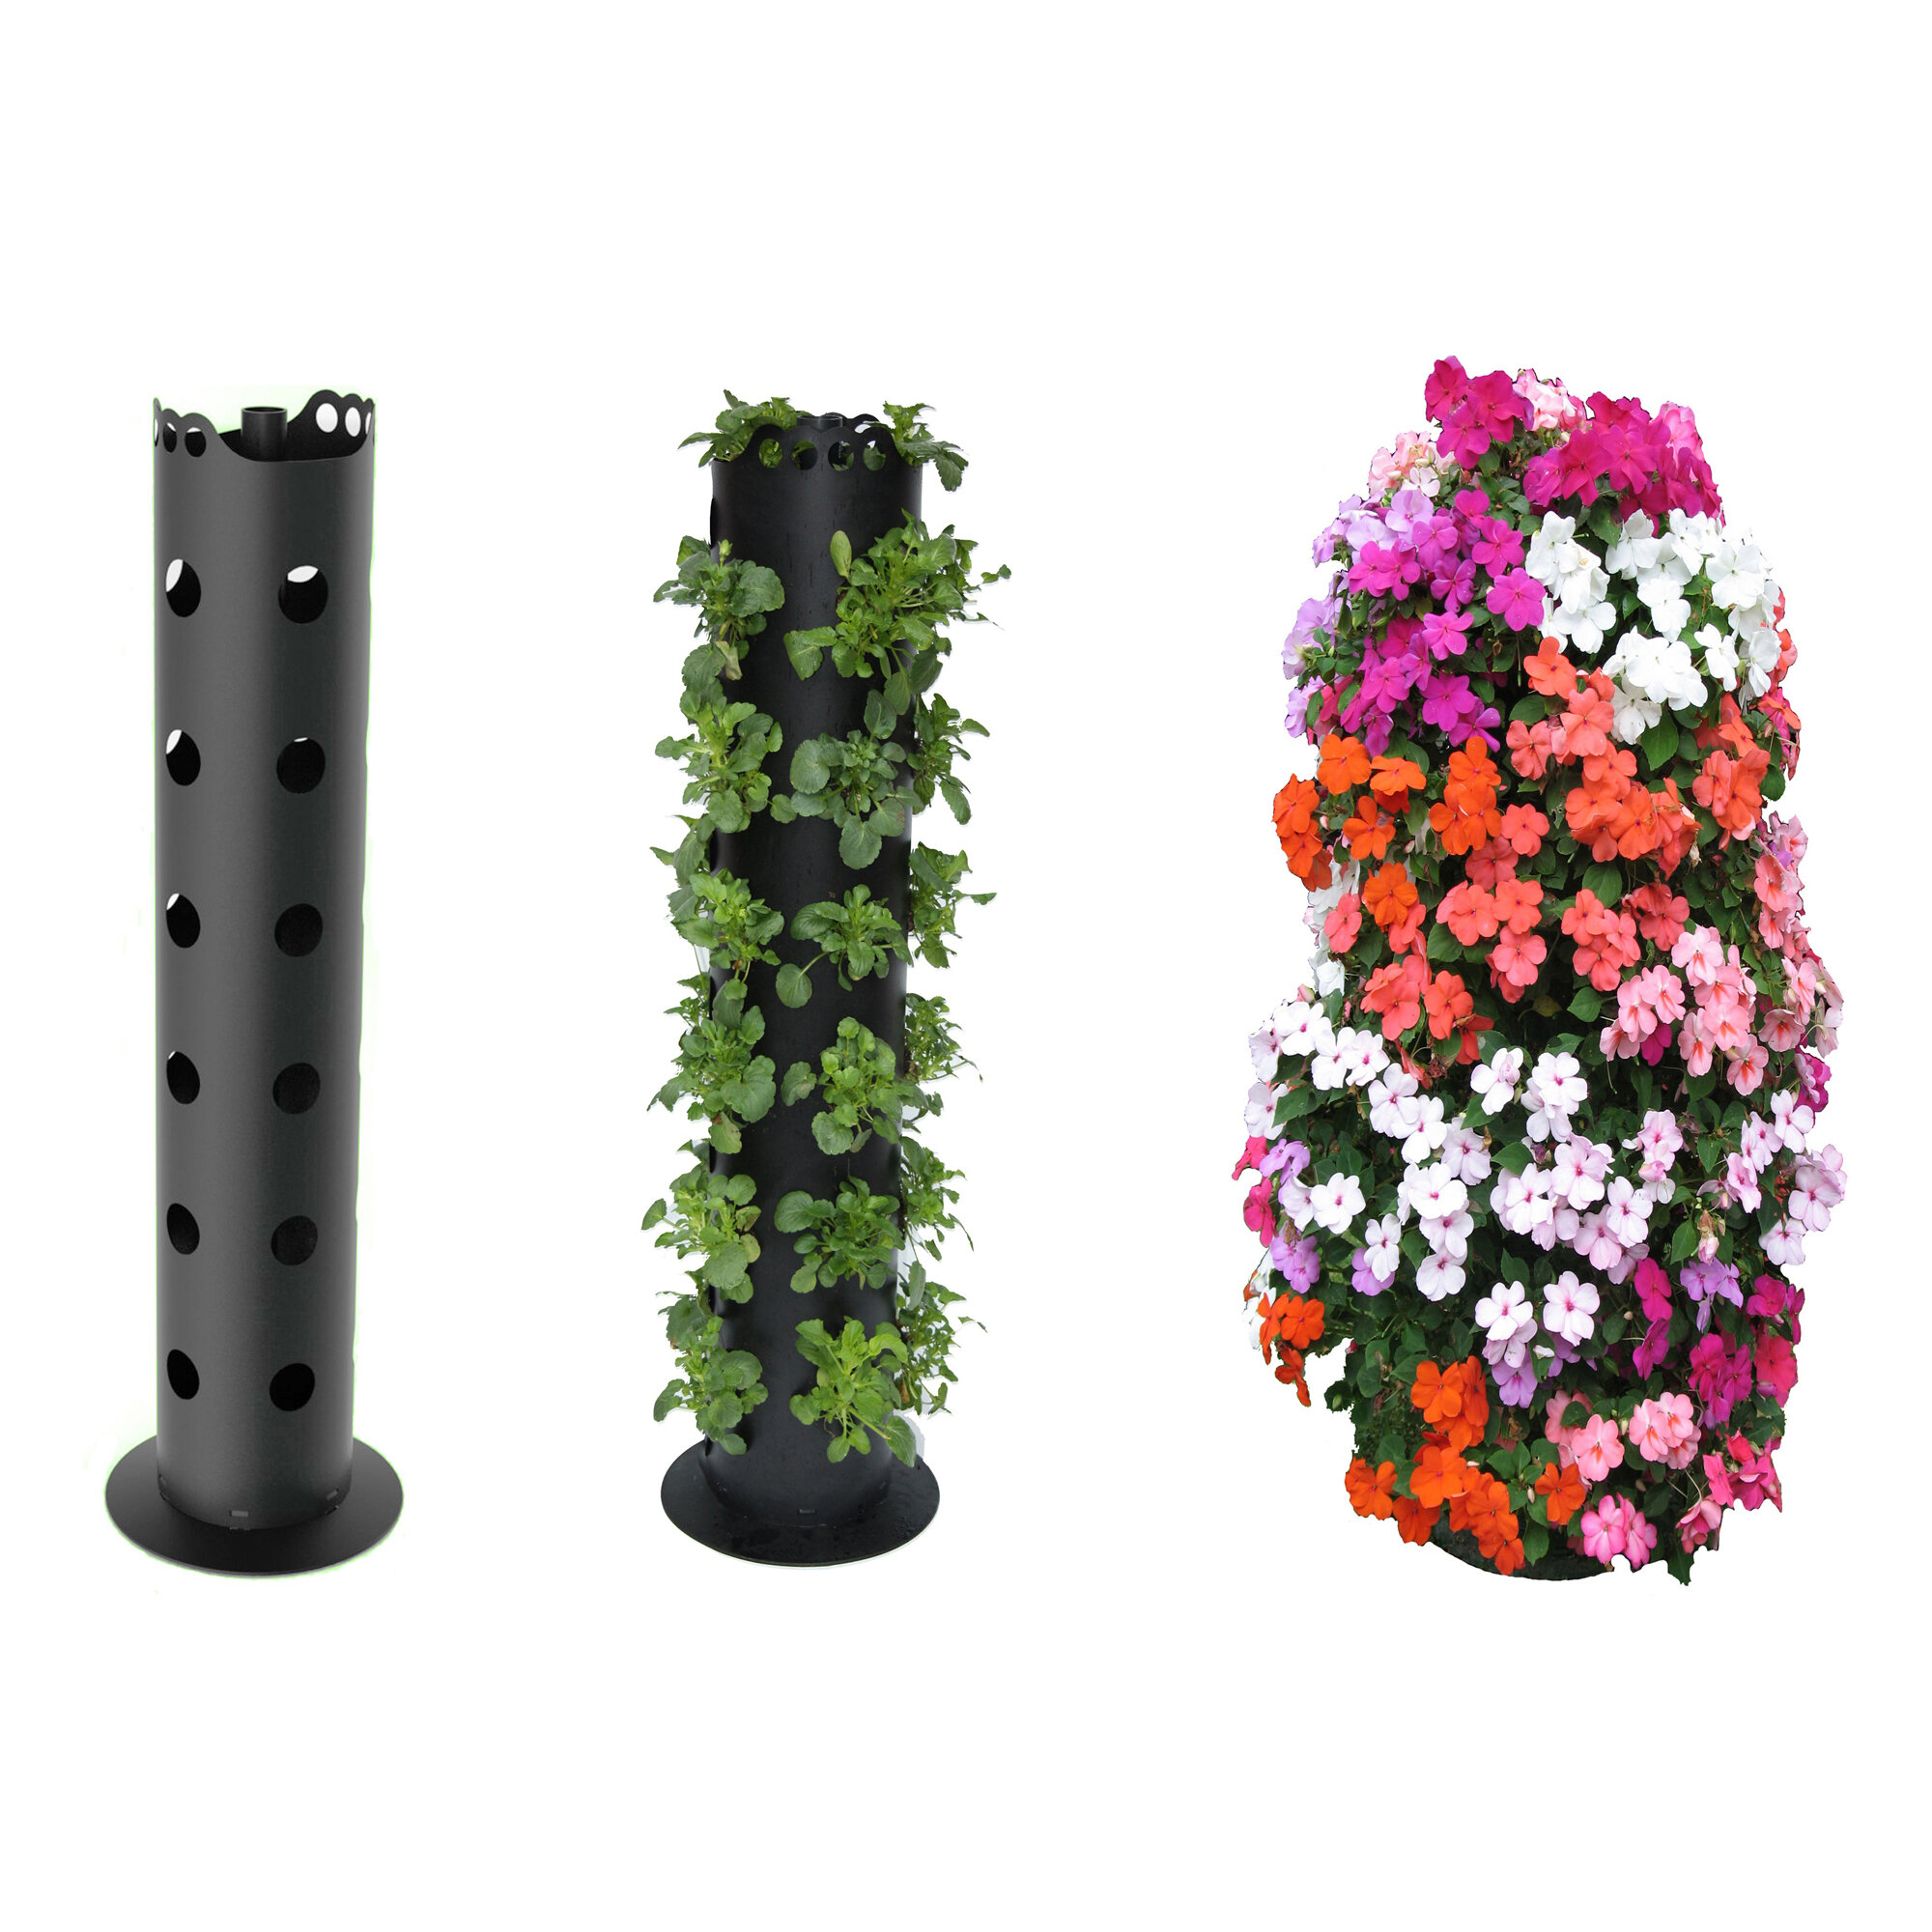 Freeport Park Bostick Flower Tower Resin Vertical Garden Reviews